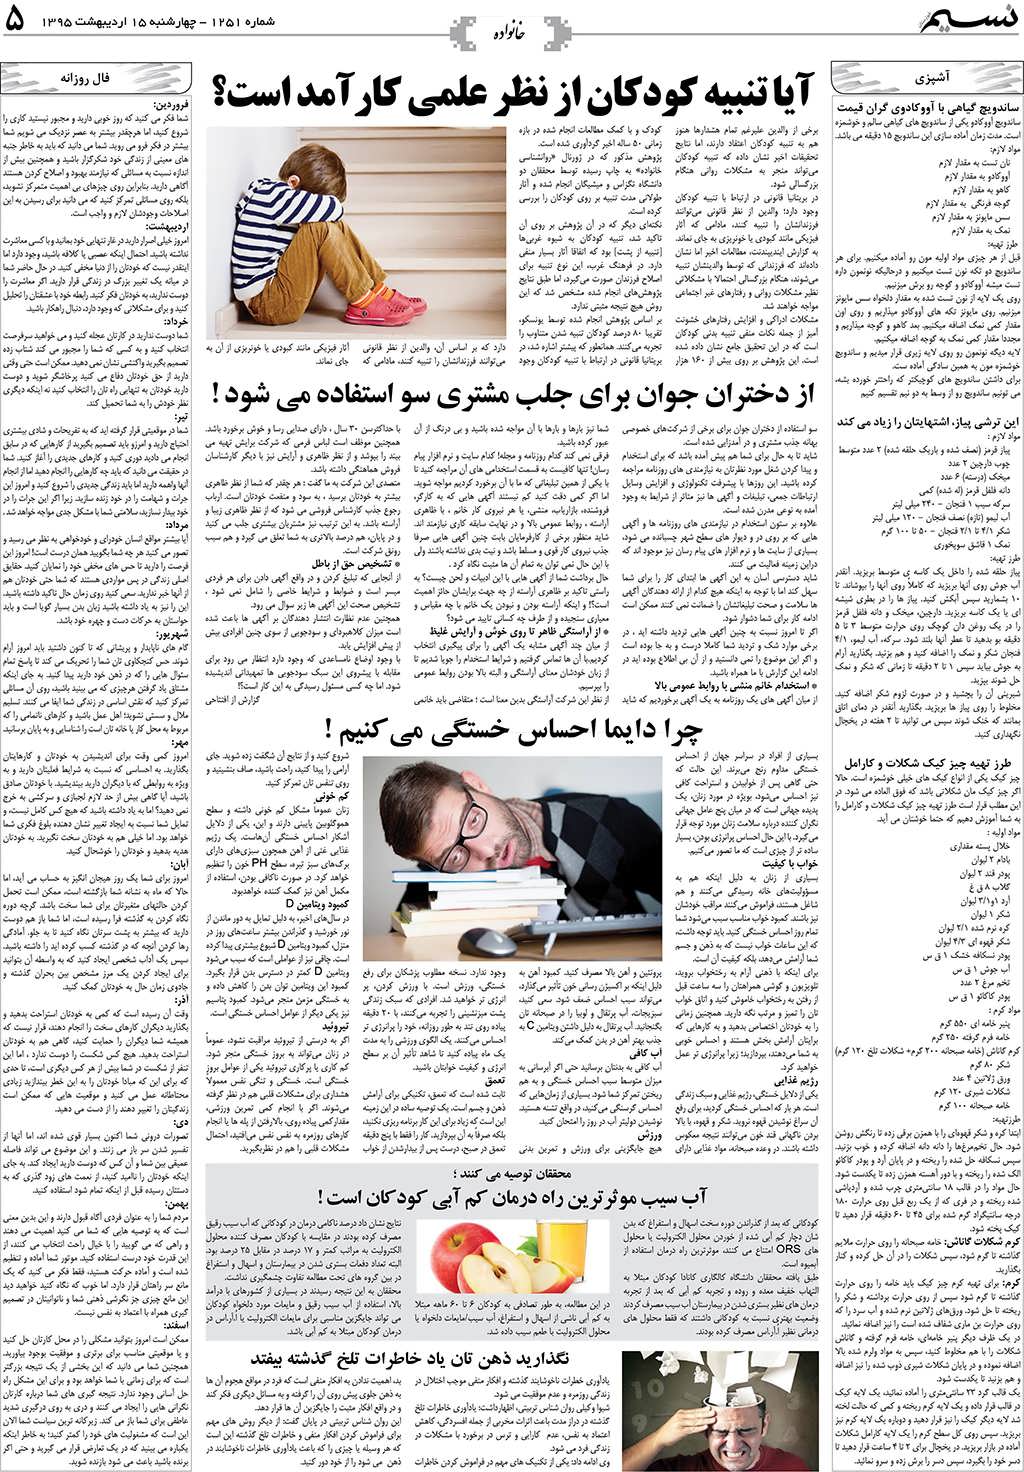 صفحه خانواده روزنامه نسیم شماره 1251